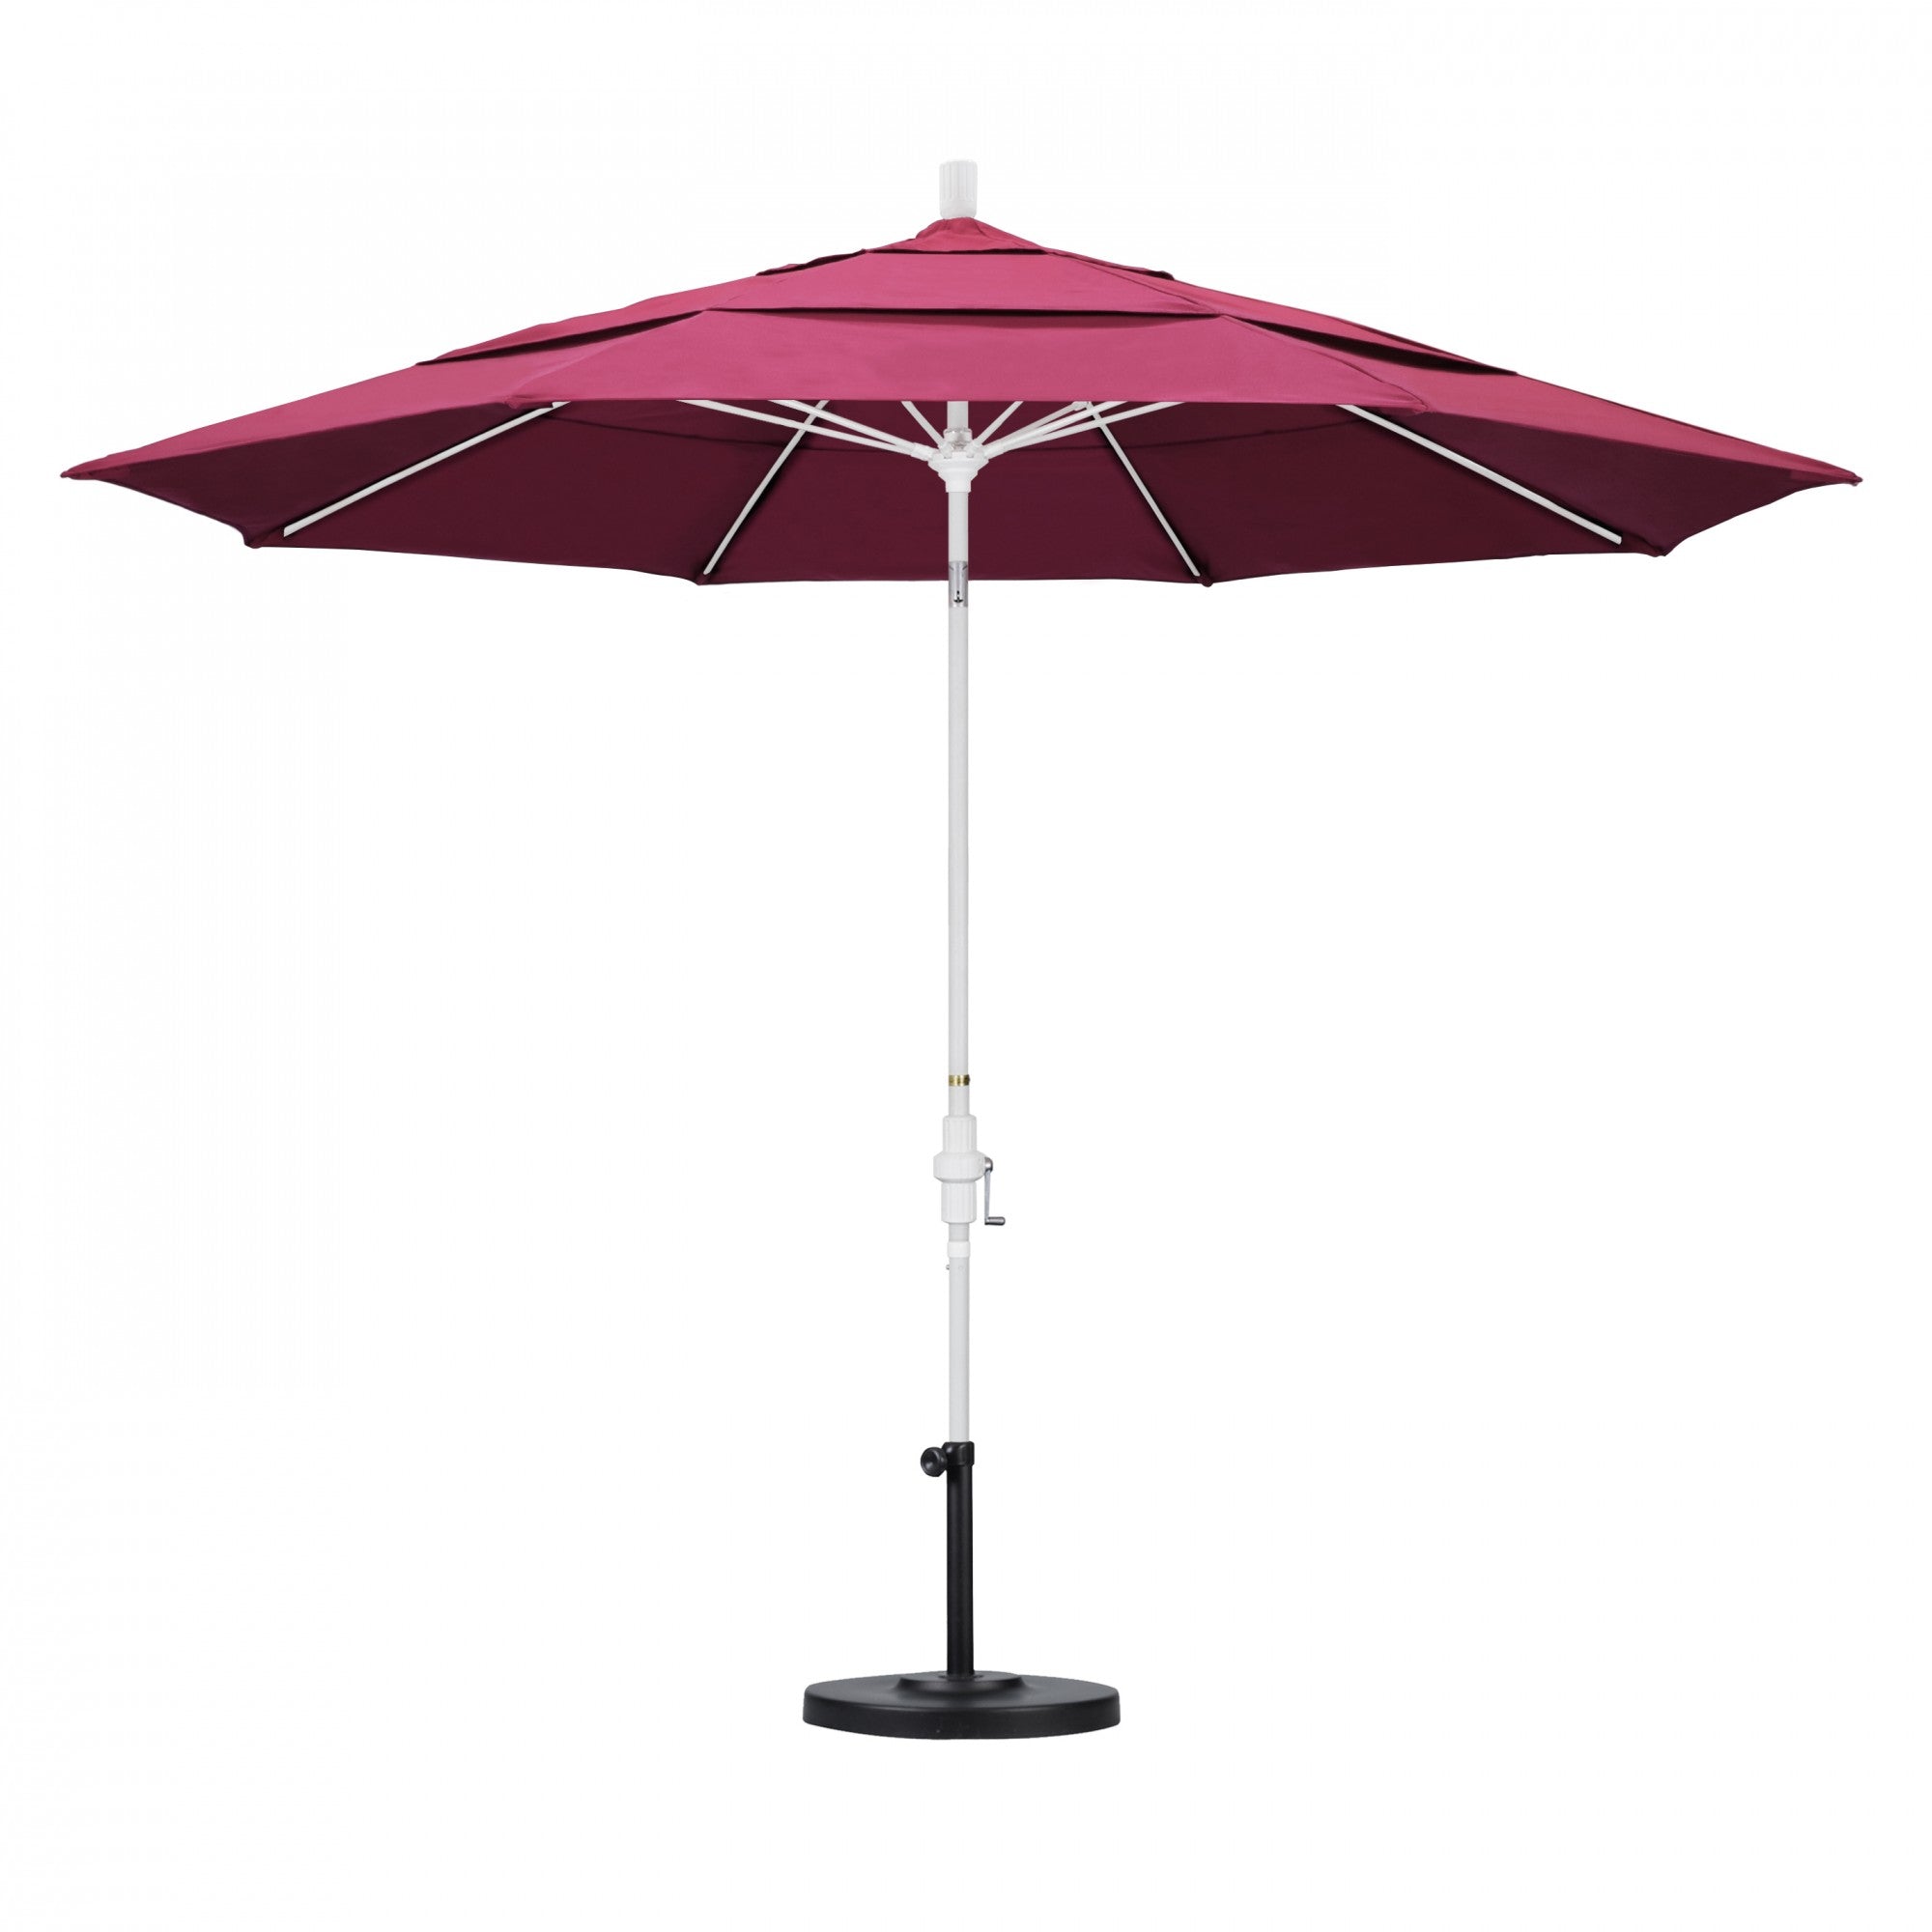 California Umbrella - 11' - Patio Umbrella Umbrella - Aluminum Pole - Hot Pink - Sunbrella  - GSCUF118170-5462-DWV